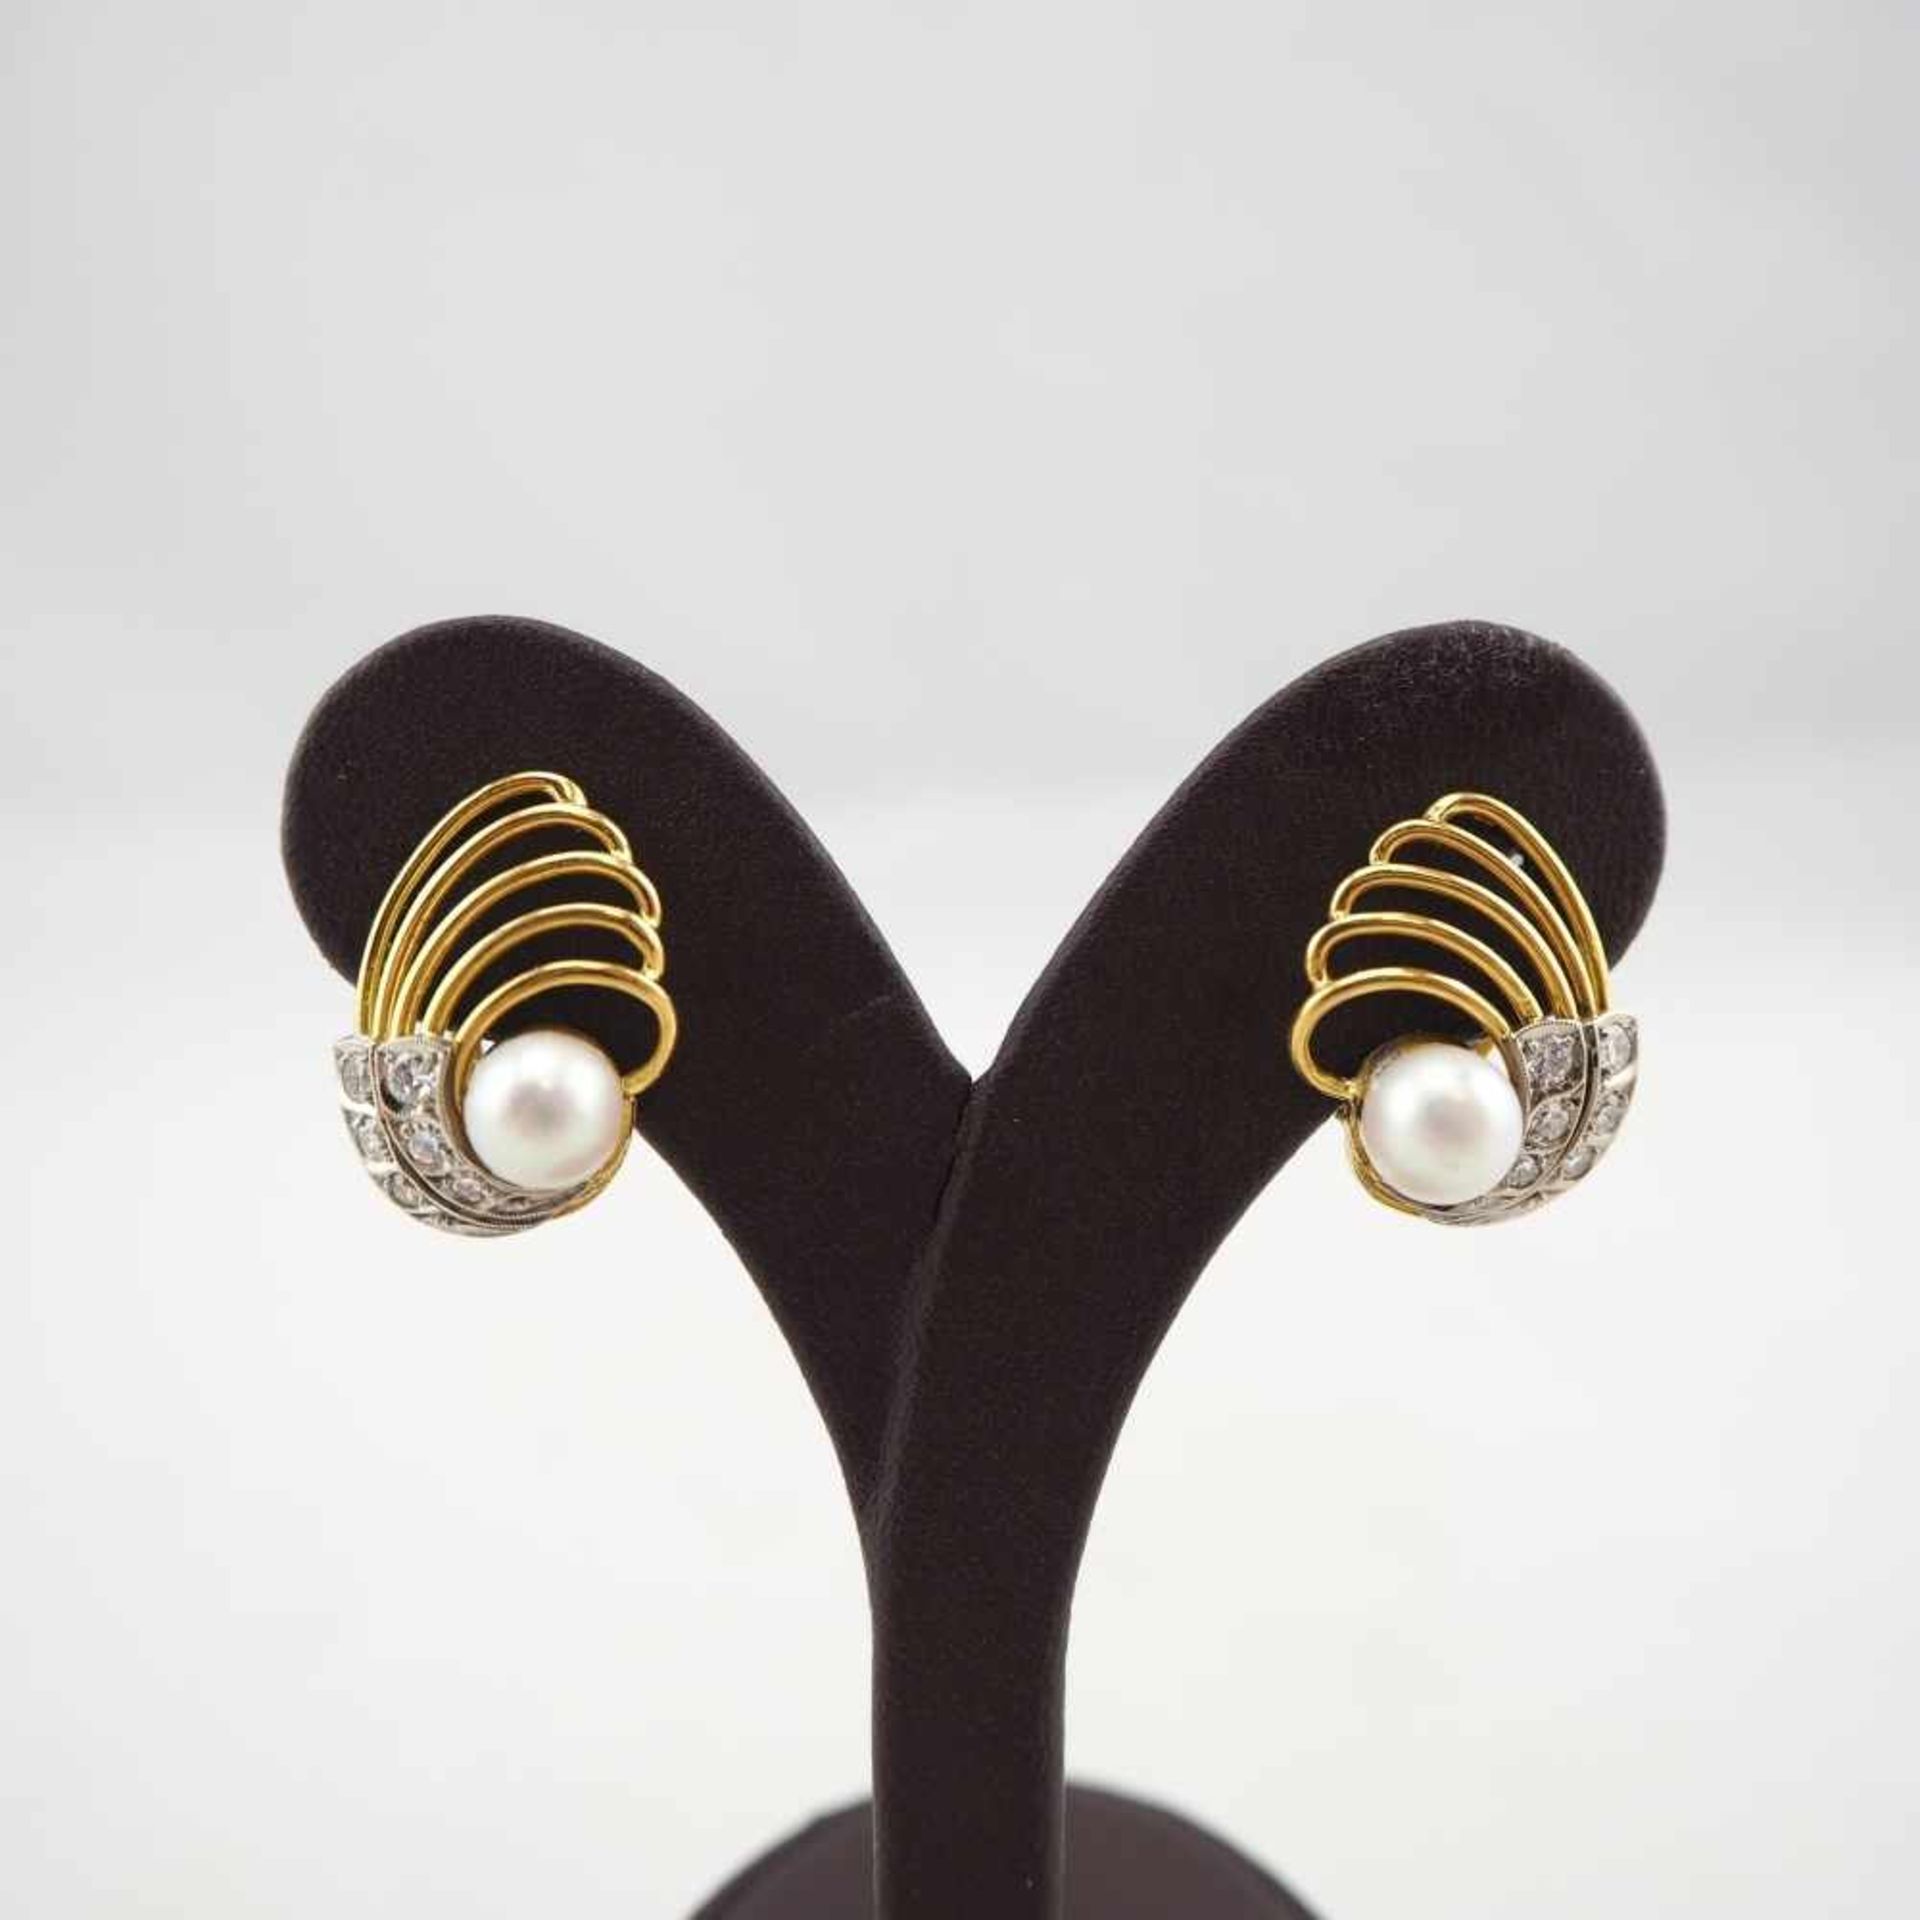 Paar 14 kt Gold Ohrringe mit Brillanten und Perlen mit Clips-VerschlussDiamanten ges. ca. 0,30 ct,